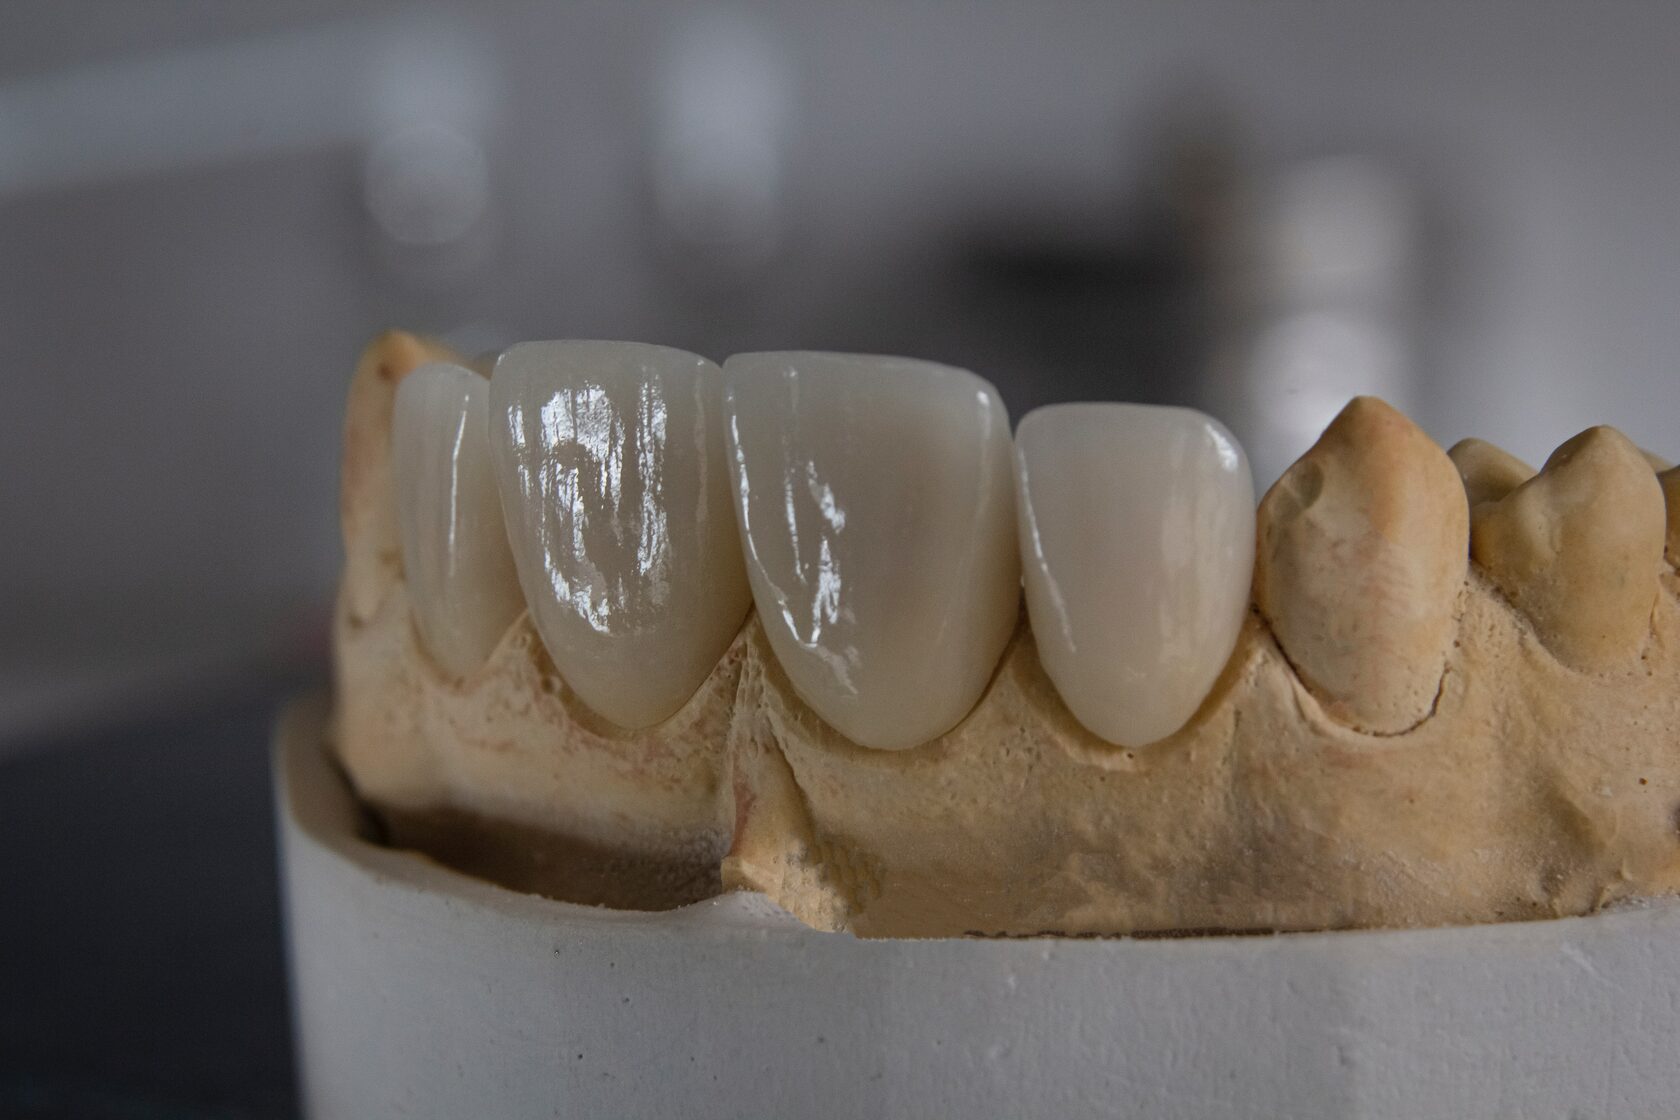 фото протезирования передних зубов